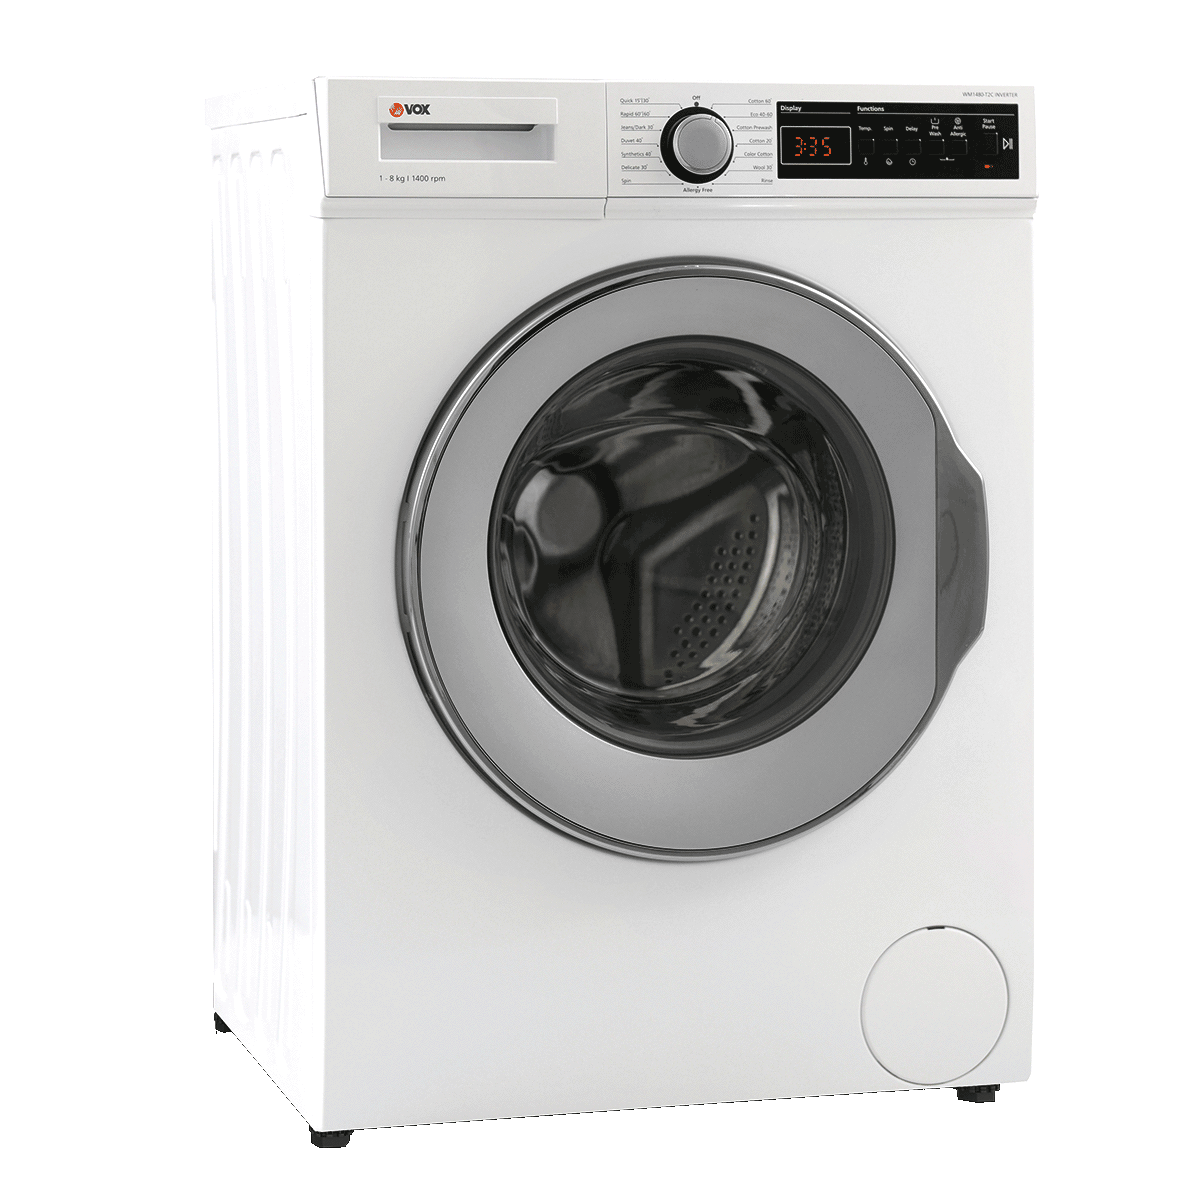 Washing machine WM1480-T2B Inverter 